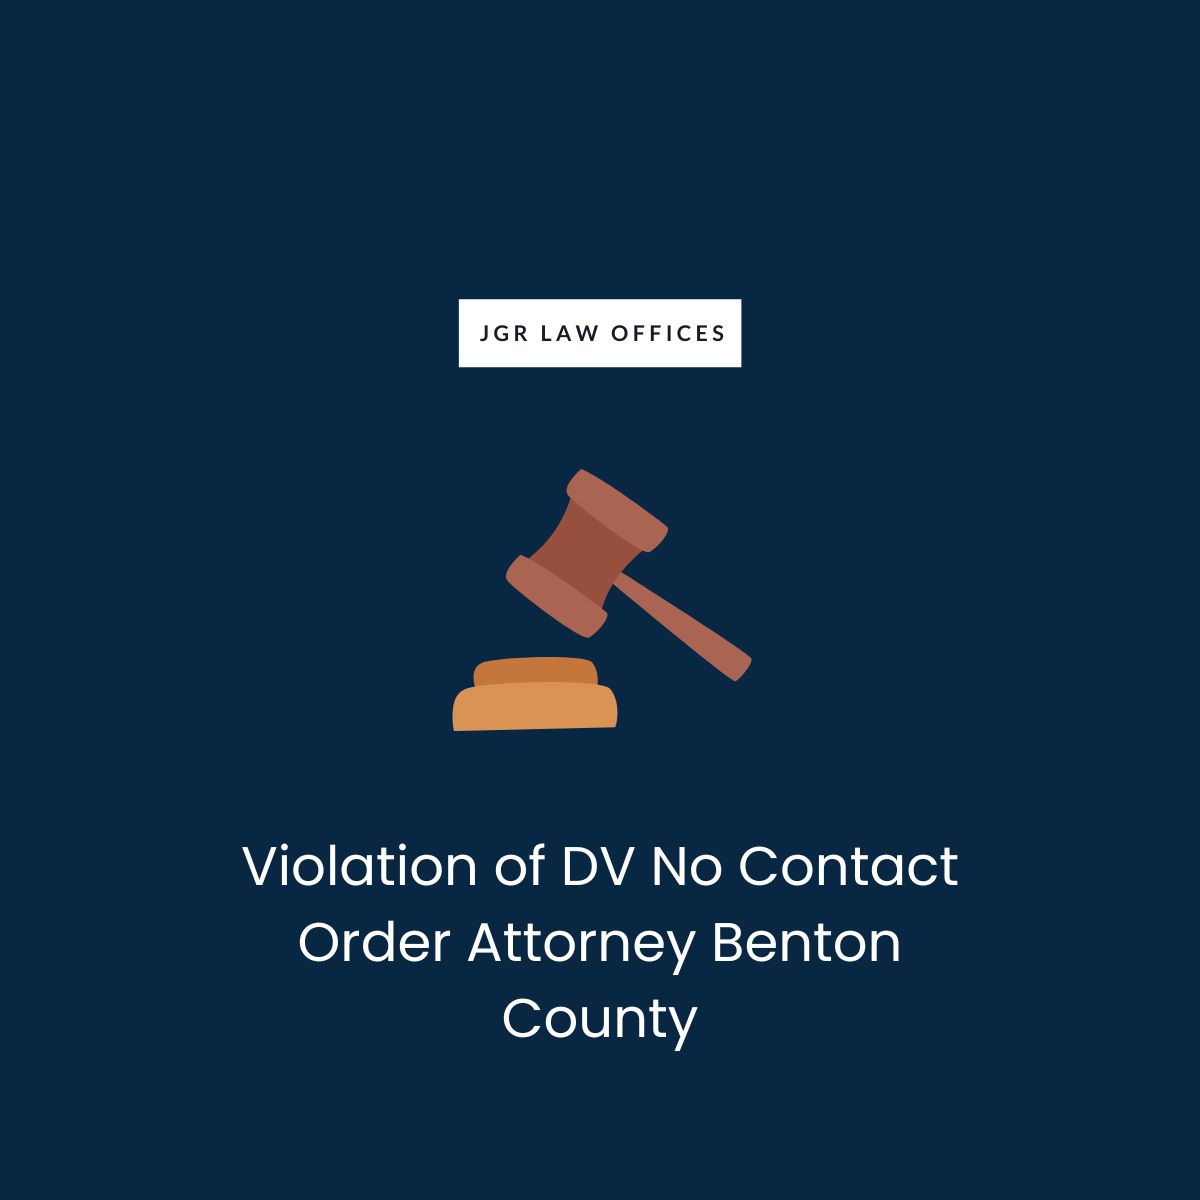 Violation of DV No Contact Order Attorney Benton County